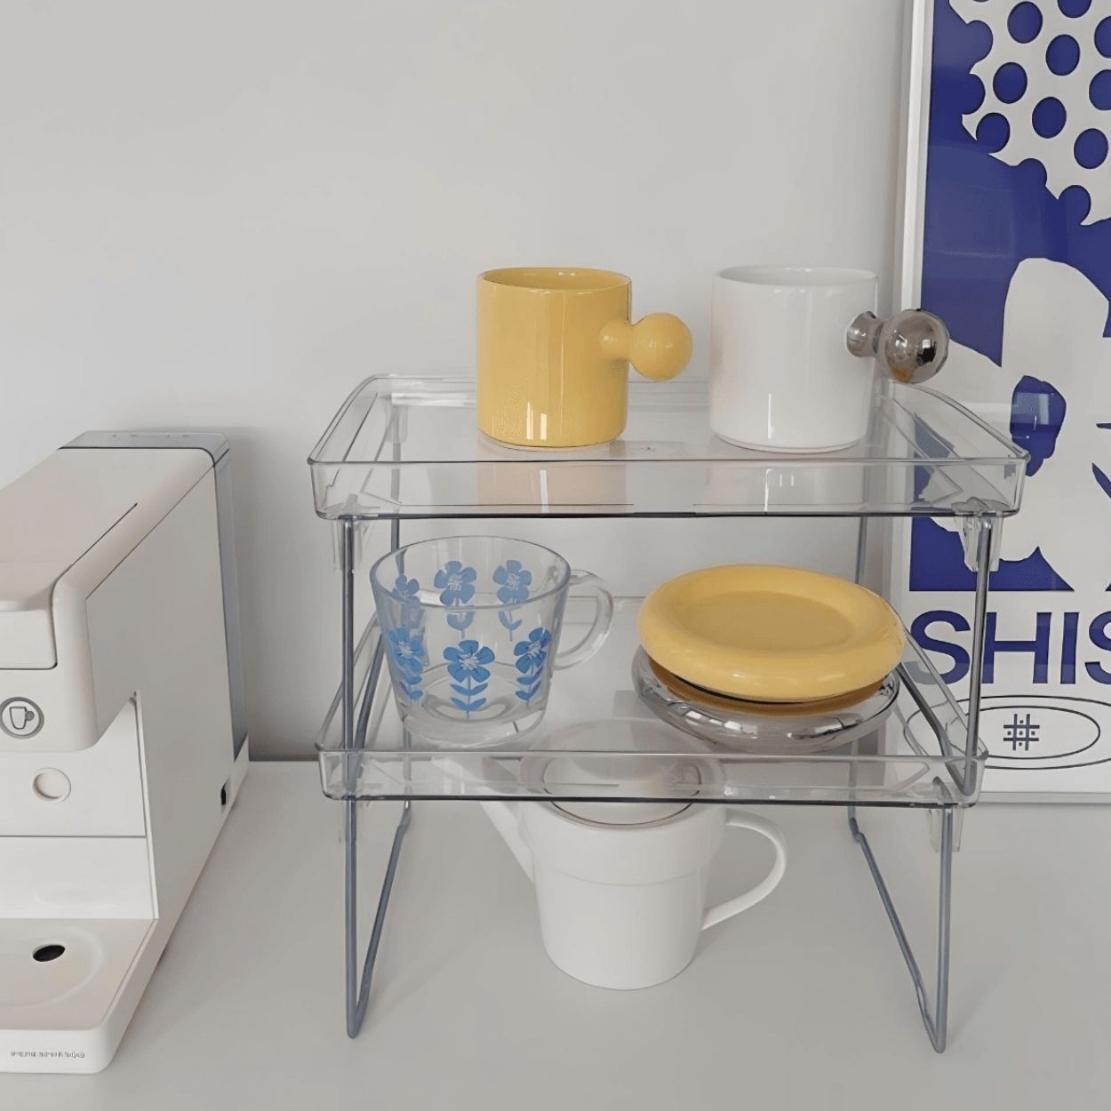 Foldable acrylic kitchen storage shelf with mugs & plates